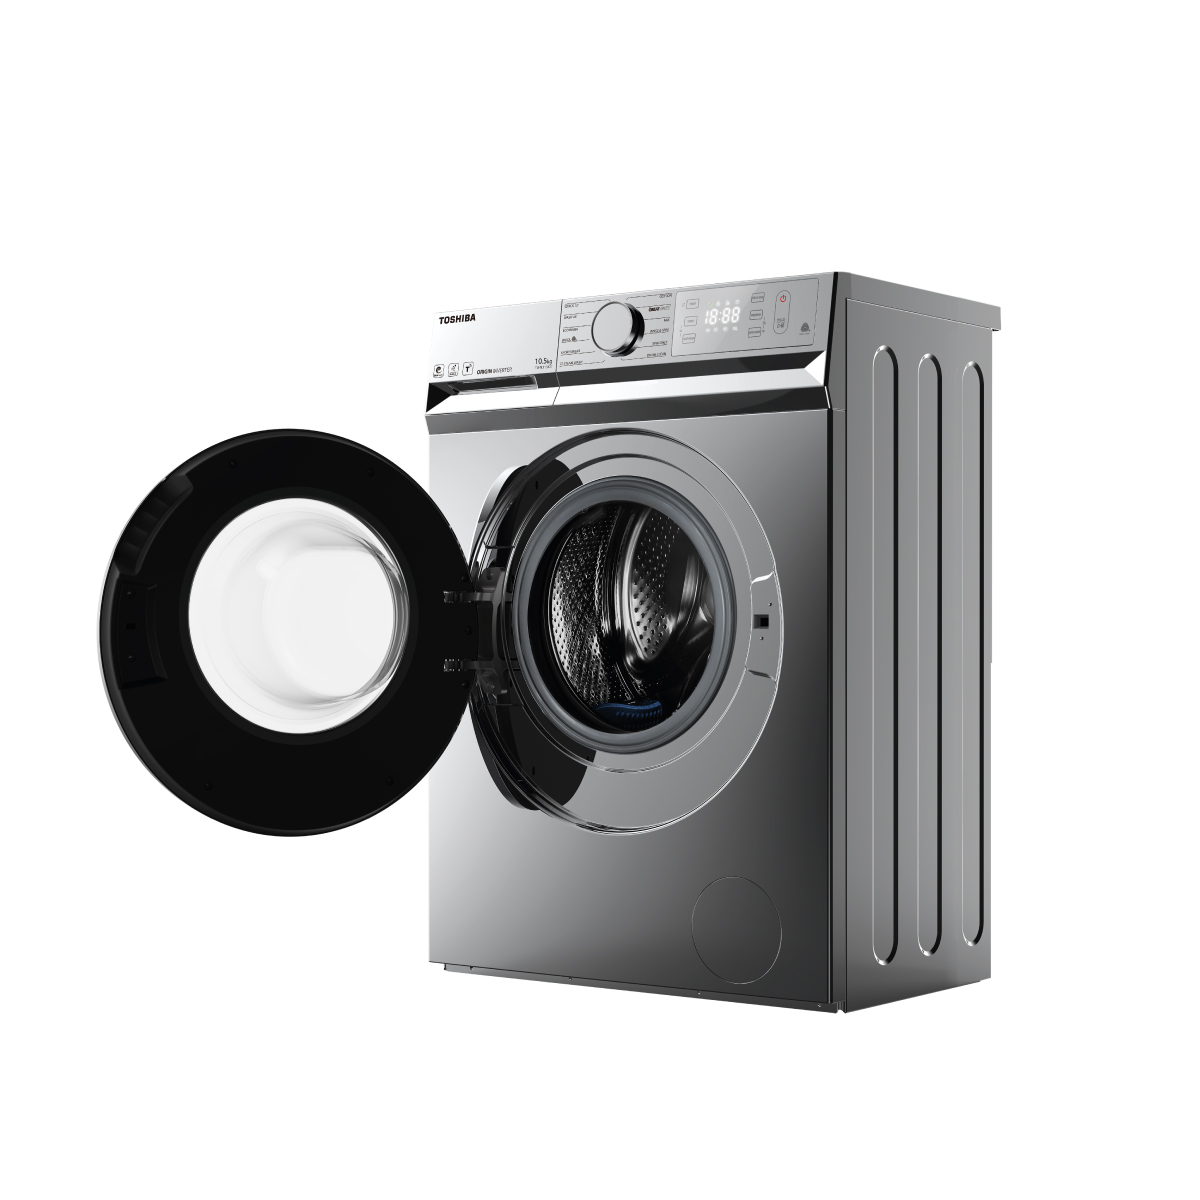 Máy giặt Toshiba: Cùng trải nghiệm công nghệ tiên tiến và độ bền vượt trội của dòng máy giặt Toshiba. Với khả năng giặt sạch, tiết kiệm nước và năng lượng, máy giặt Toshiba là sự lựa chọn hoàn hảo cho mọi gia đình trong việc giảm thiểu tác động đến môi trường và tiết kiệm chi phí.